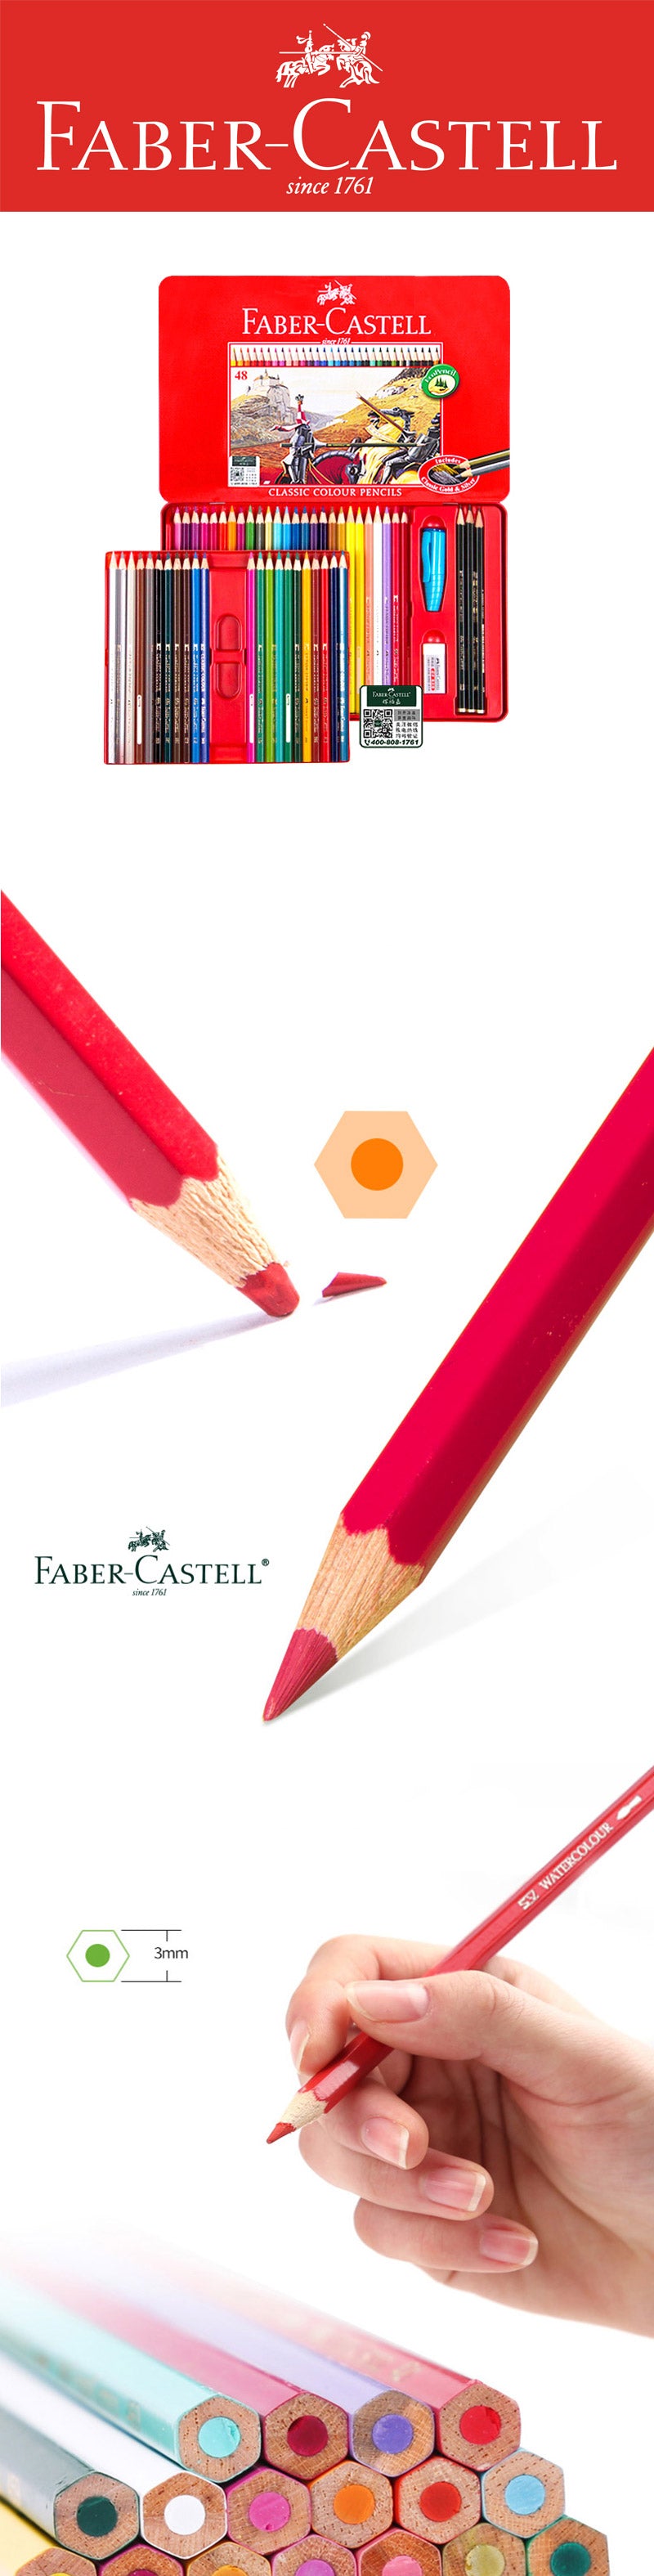 Faber-Castell Colored Pencil Tin Case 48 / 60 / 100 Colors Set - Detail